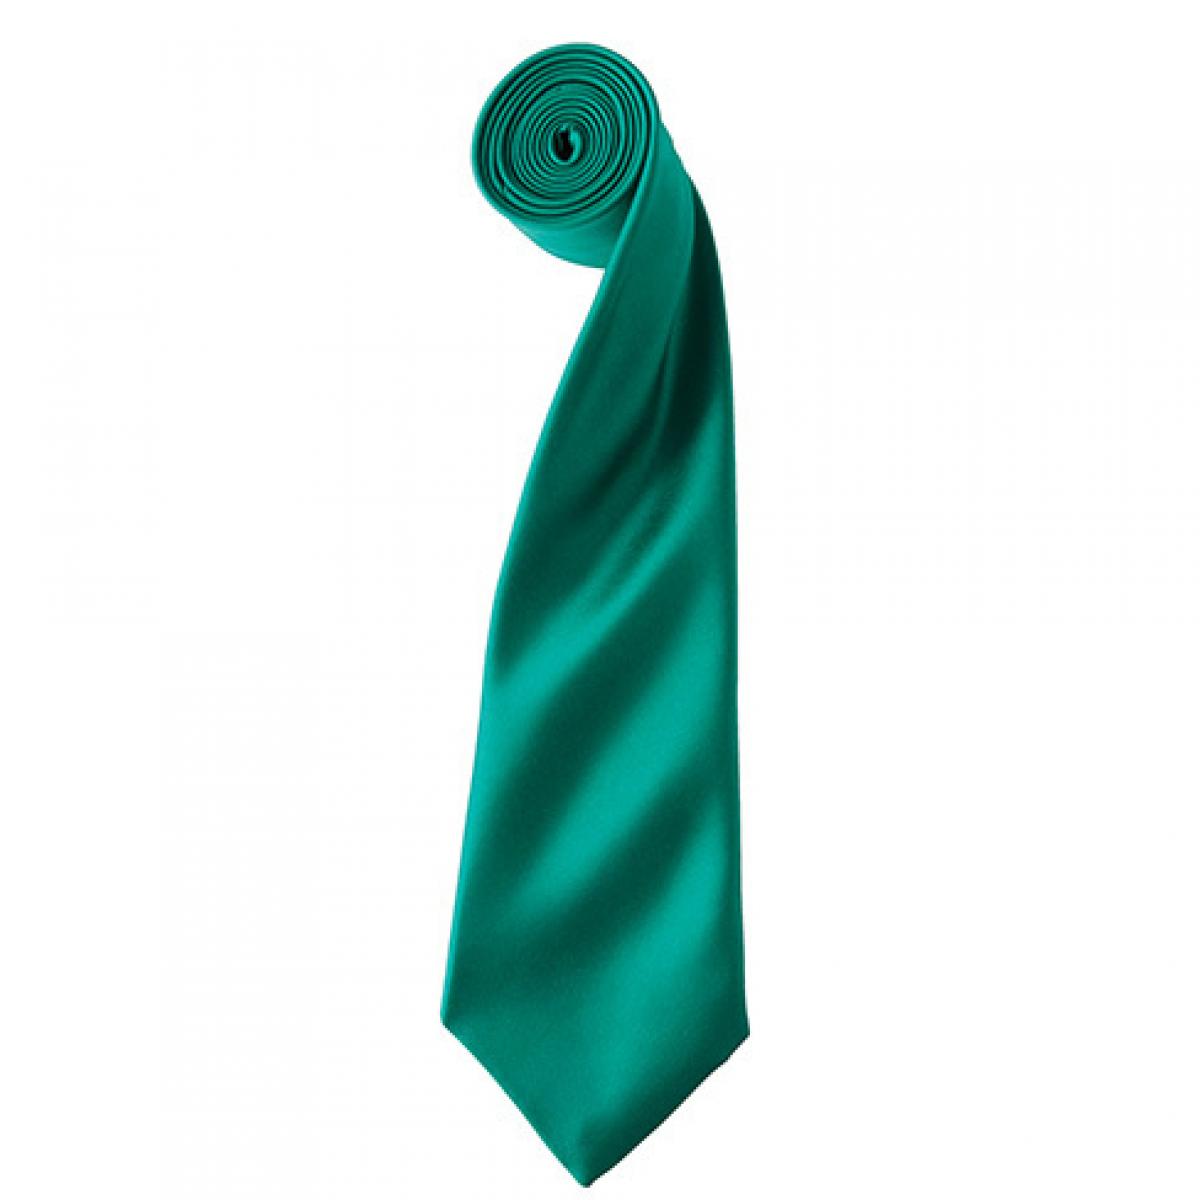 Hersteller: Premier Workwear Herstellernummer: PR750 Artikelbezeichnung: Satin Tie ´Colours´ / 144 x 8,5 cm Farbe: Emerald (ca. Pantone 341)